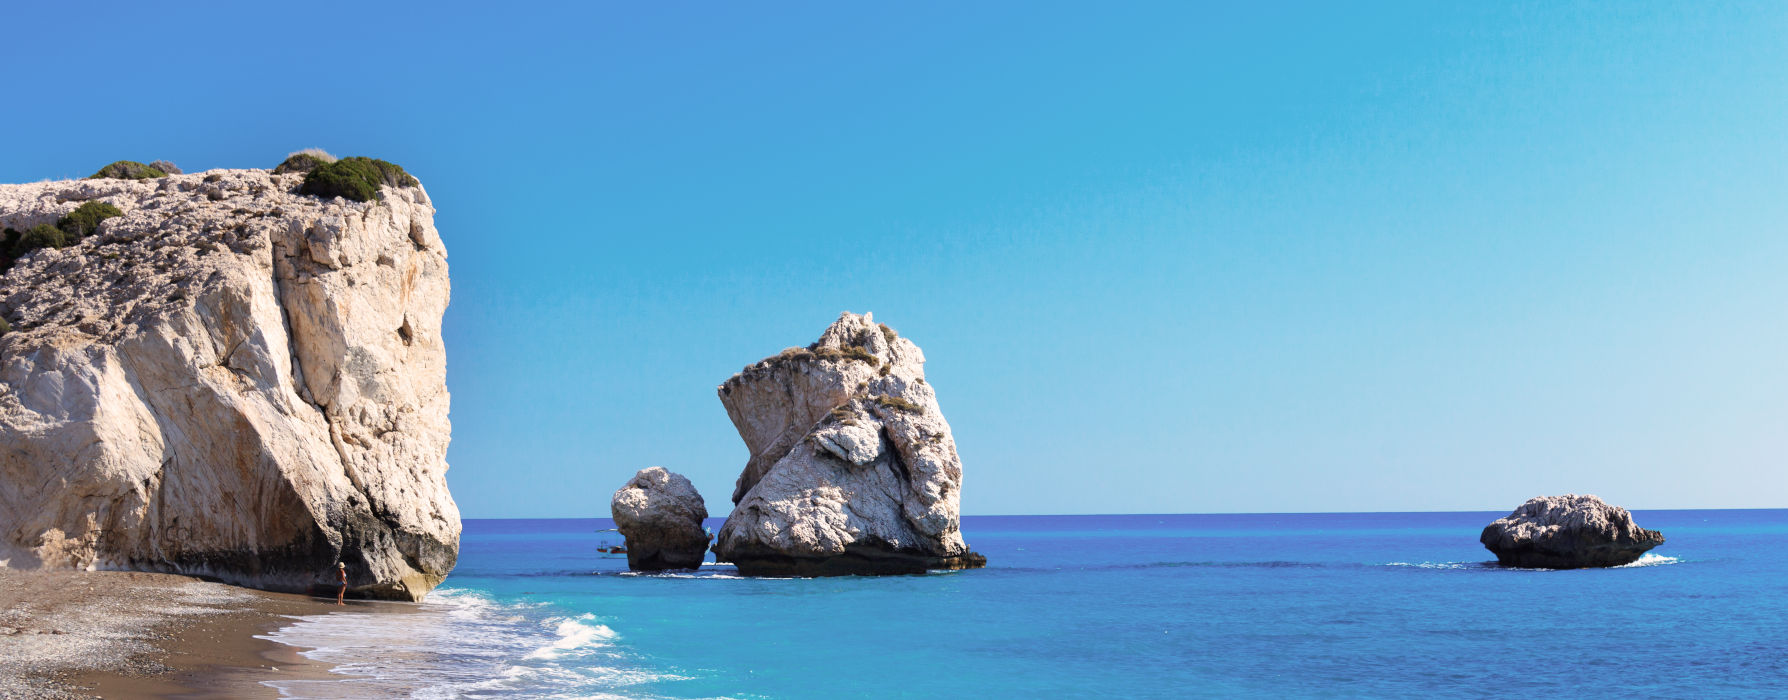 Cyprus<br class="hidden-md hidden-lg" /> Summer Holidays